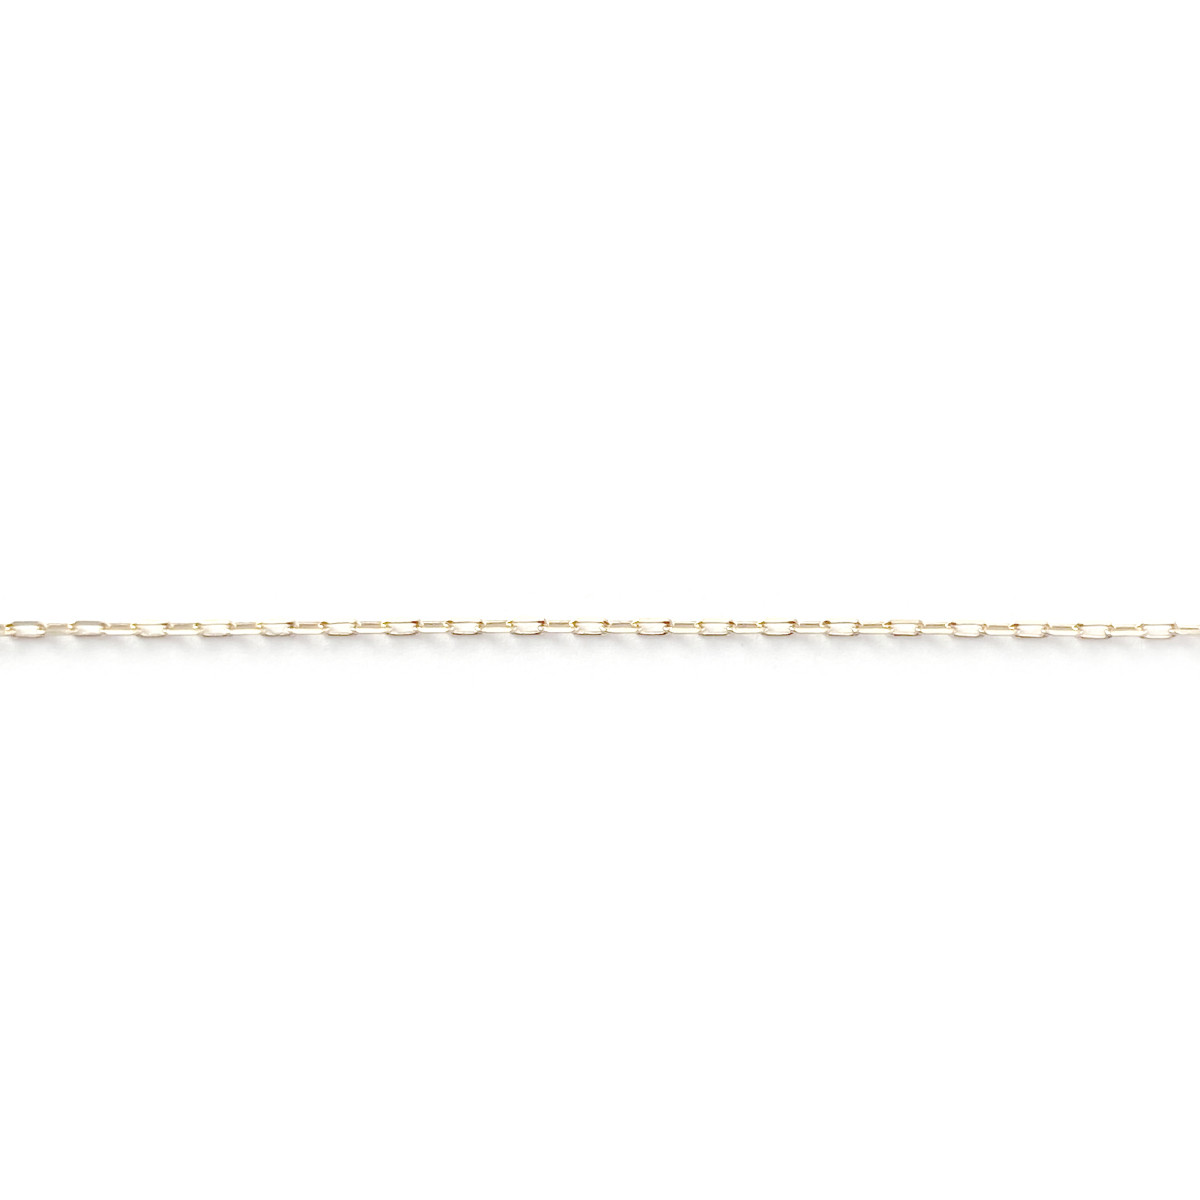 Collier d'occasion or jaune 375, motif anneau. Longueur 40 cm. - vue 3